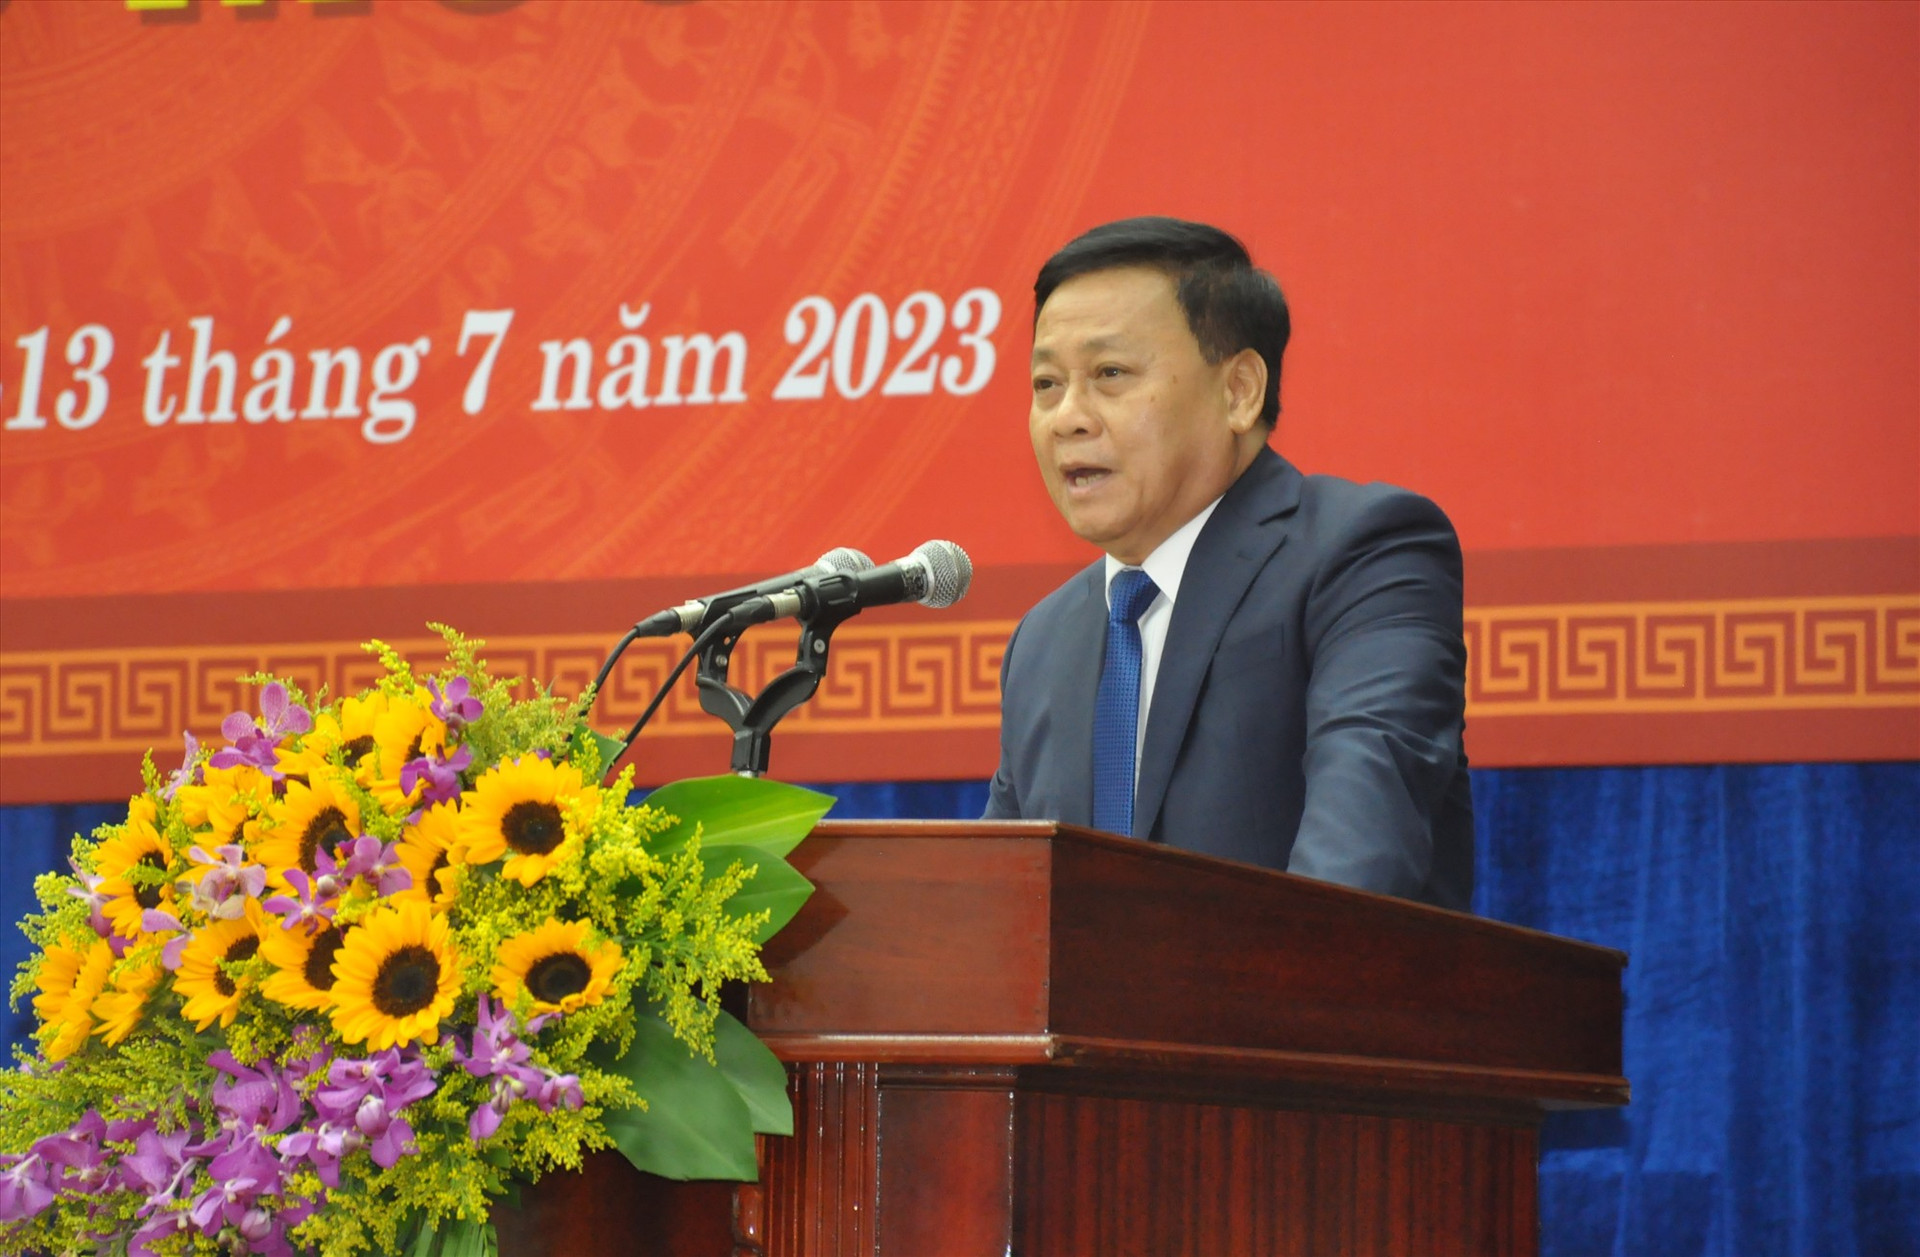 Theo dự phân công của UBND tỉnh, Giám đốc Sở KH-ĐT Nguyễn Quang Thử báo cáo nội dung điều chỉnh, bổ sung kế hoạch đầu tư công trung hạn giai đoạn 2021-2025 và dự kiến Kế hoạch đầu tư công năm 2024. Ảnh: P.Đ